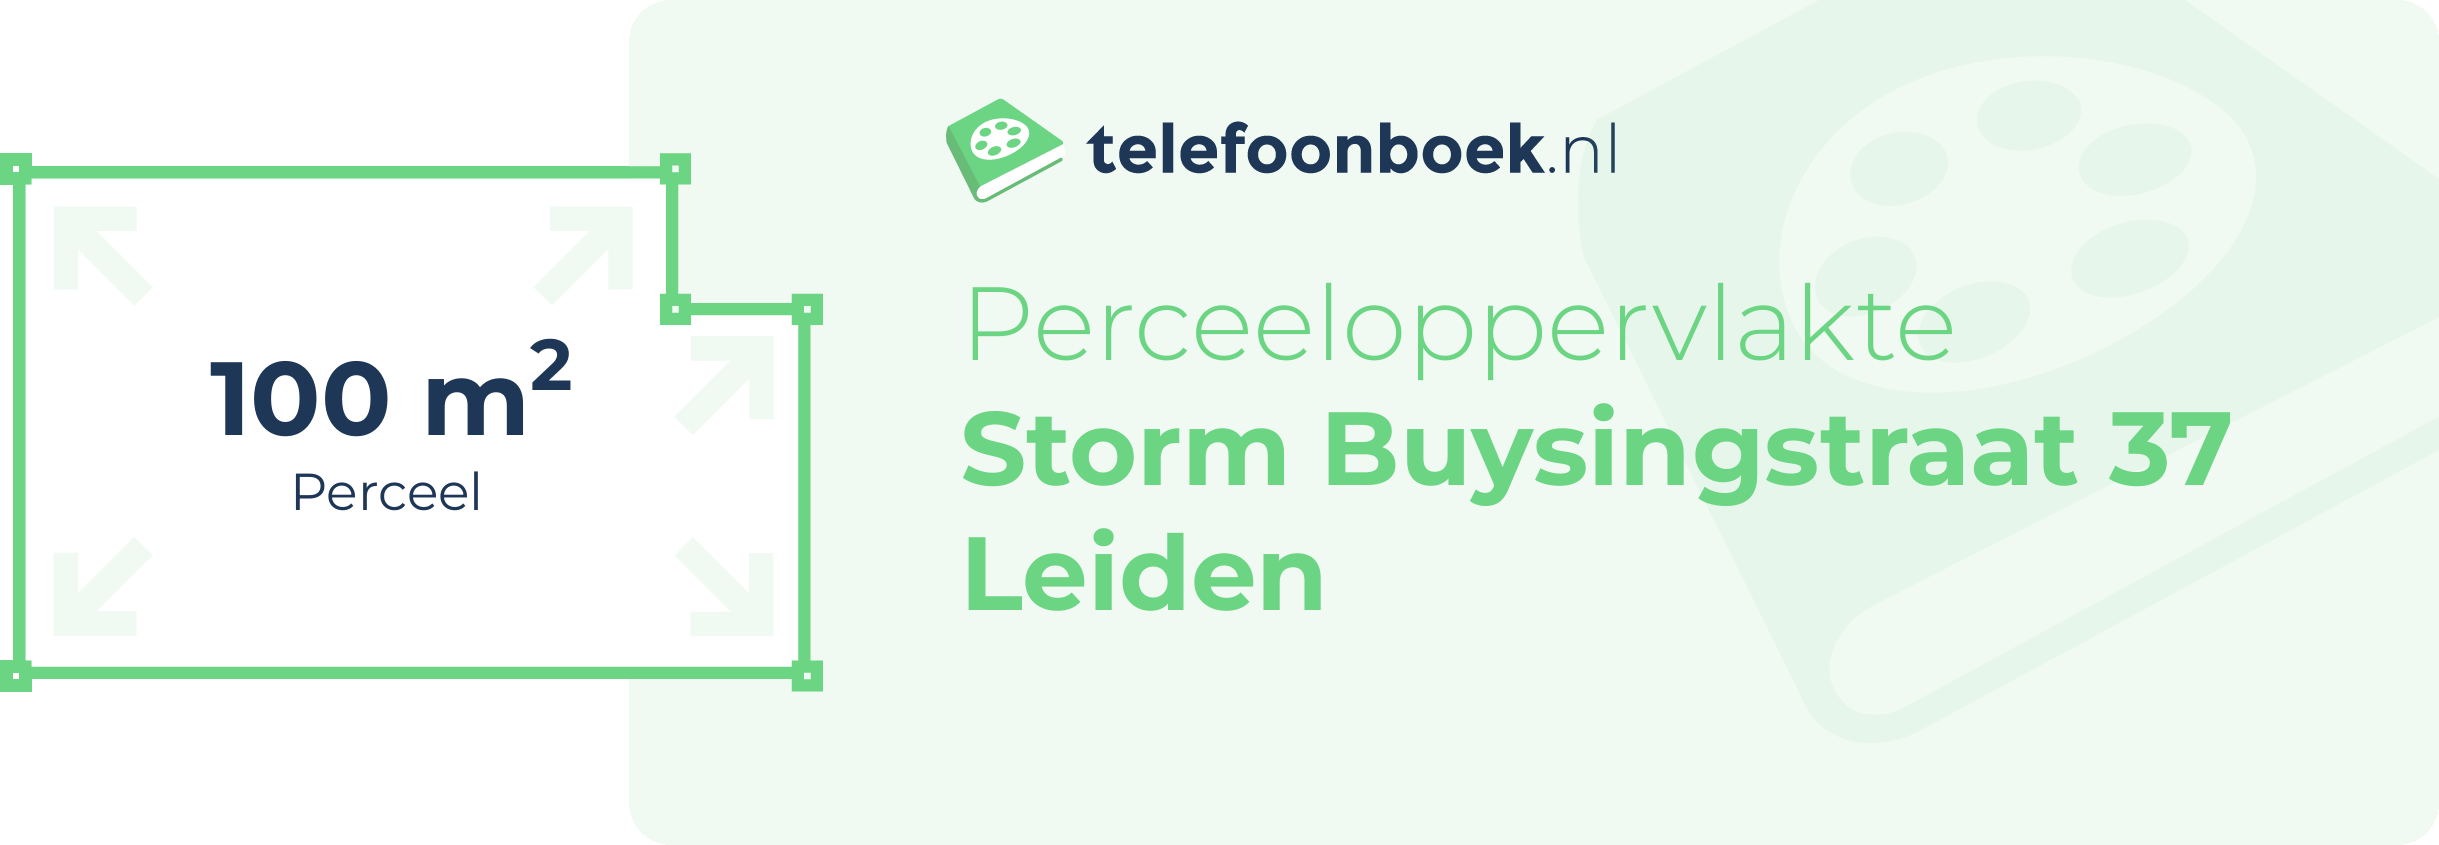 Perceeloppervlakte Storm Buysingstraat 37 Leiden